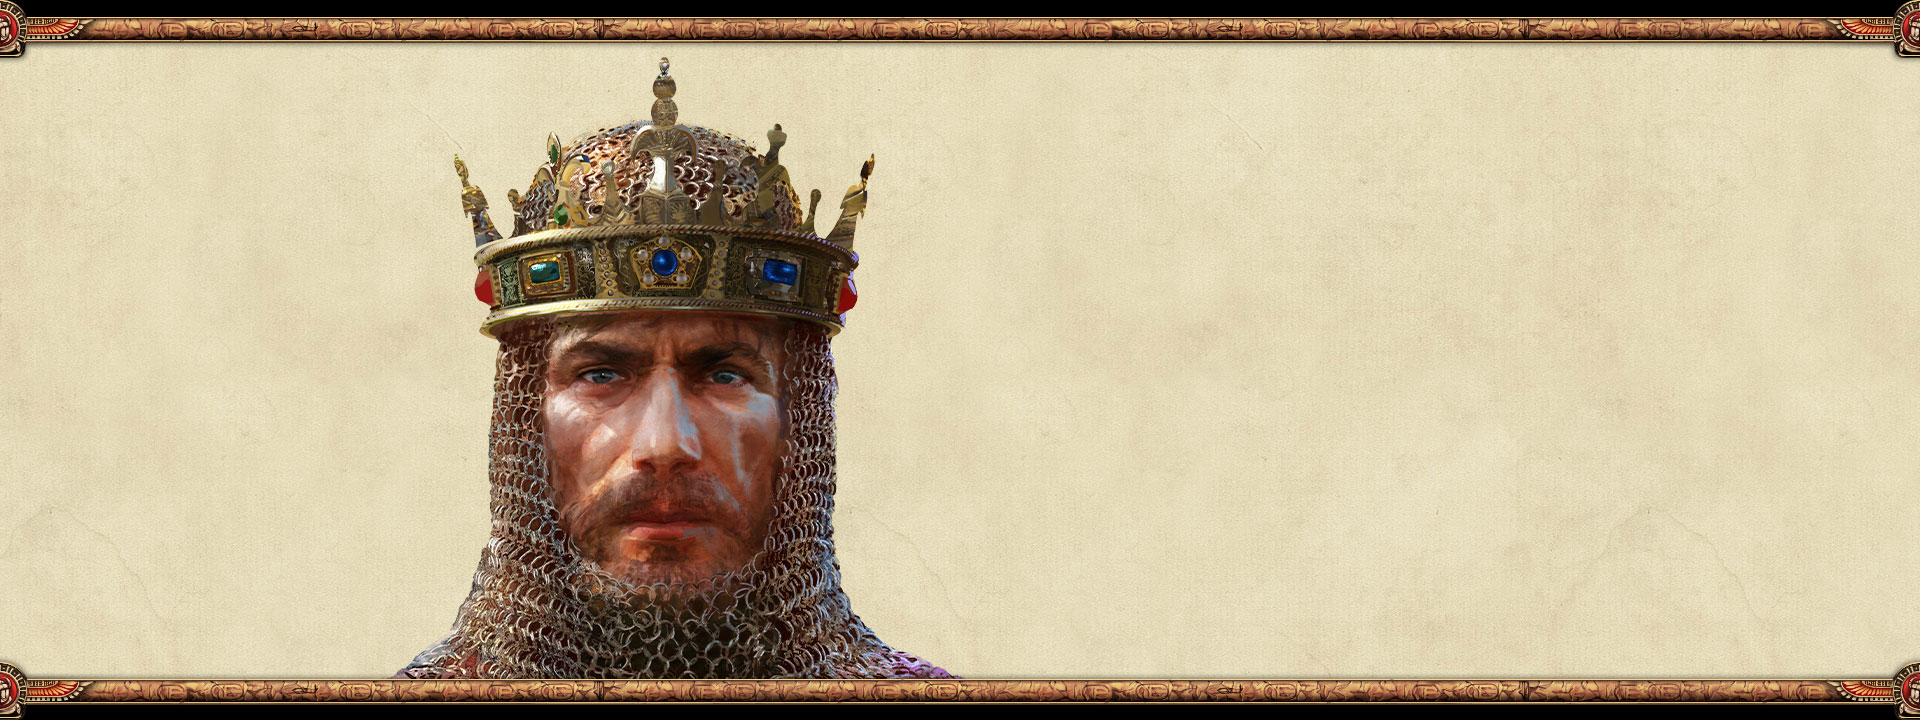 Le souverain d’un empire, portant une cotte de mailles et une couronne